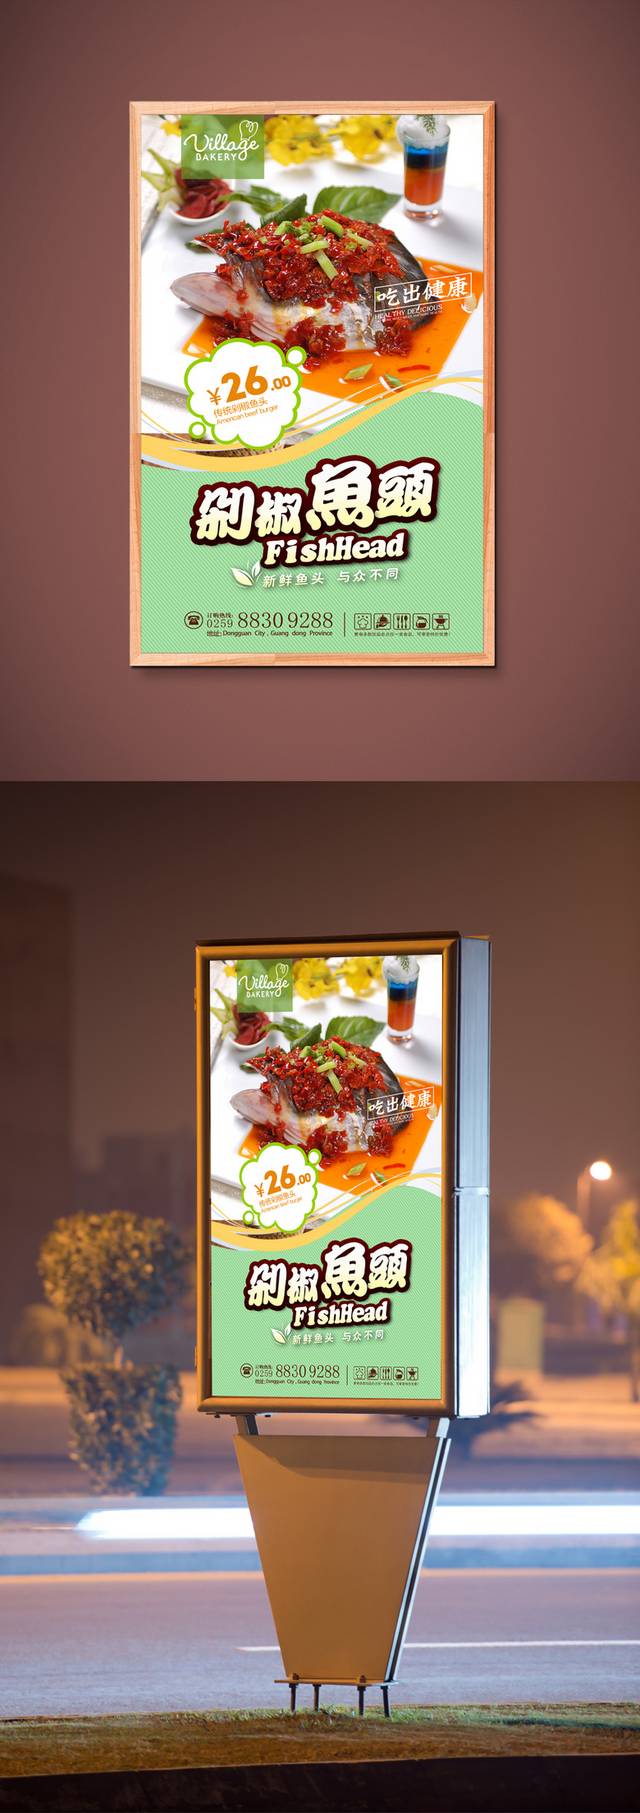 美味剁椒鱼头美食促销海报设计